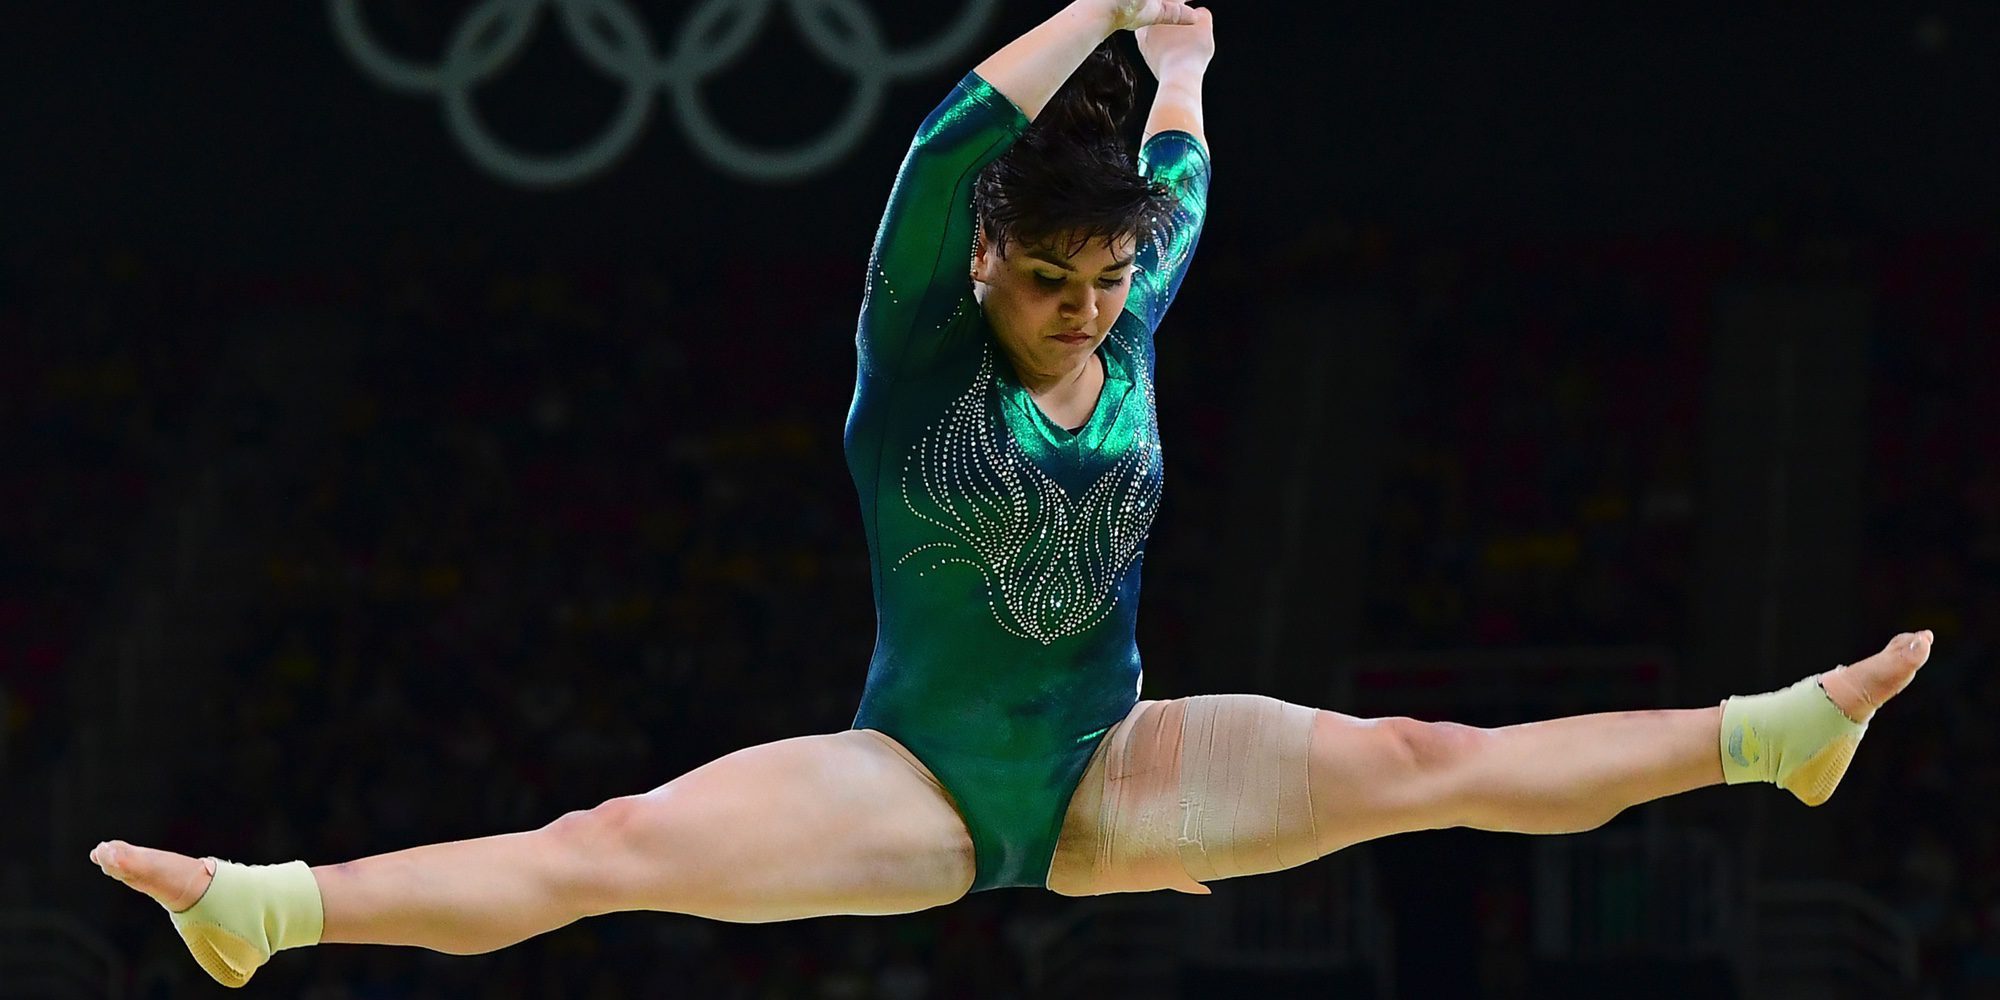 La gimnasta mexicana Alexa Moreno, criticada por su peso tras su participación en Río 2016